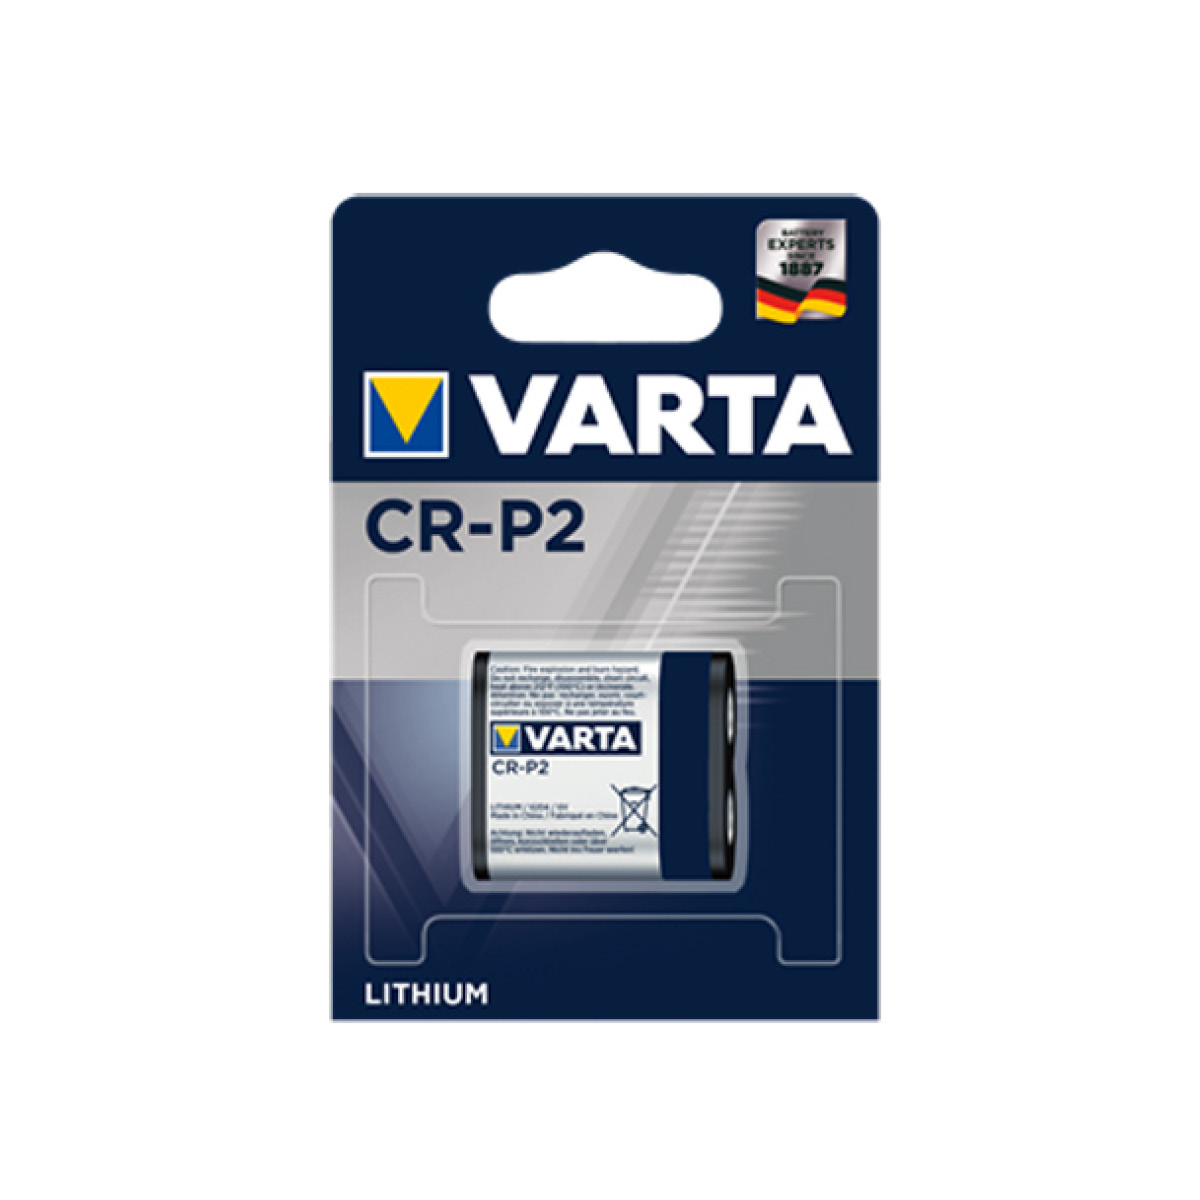 Varta Professional Lithium CR-P2 Batterie